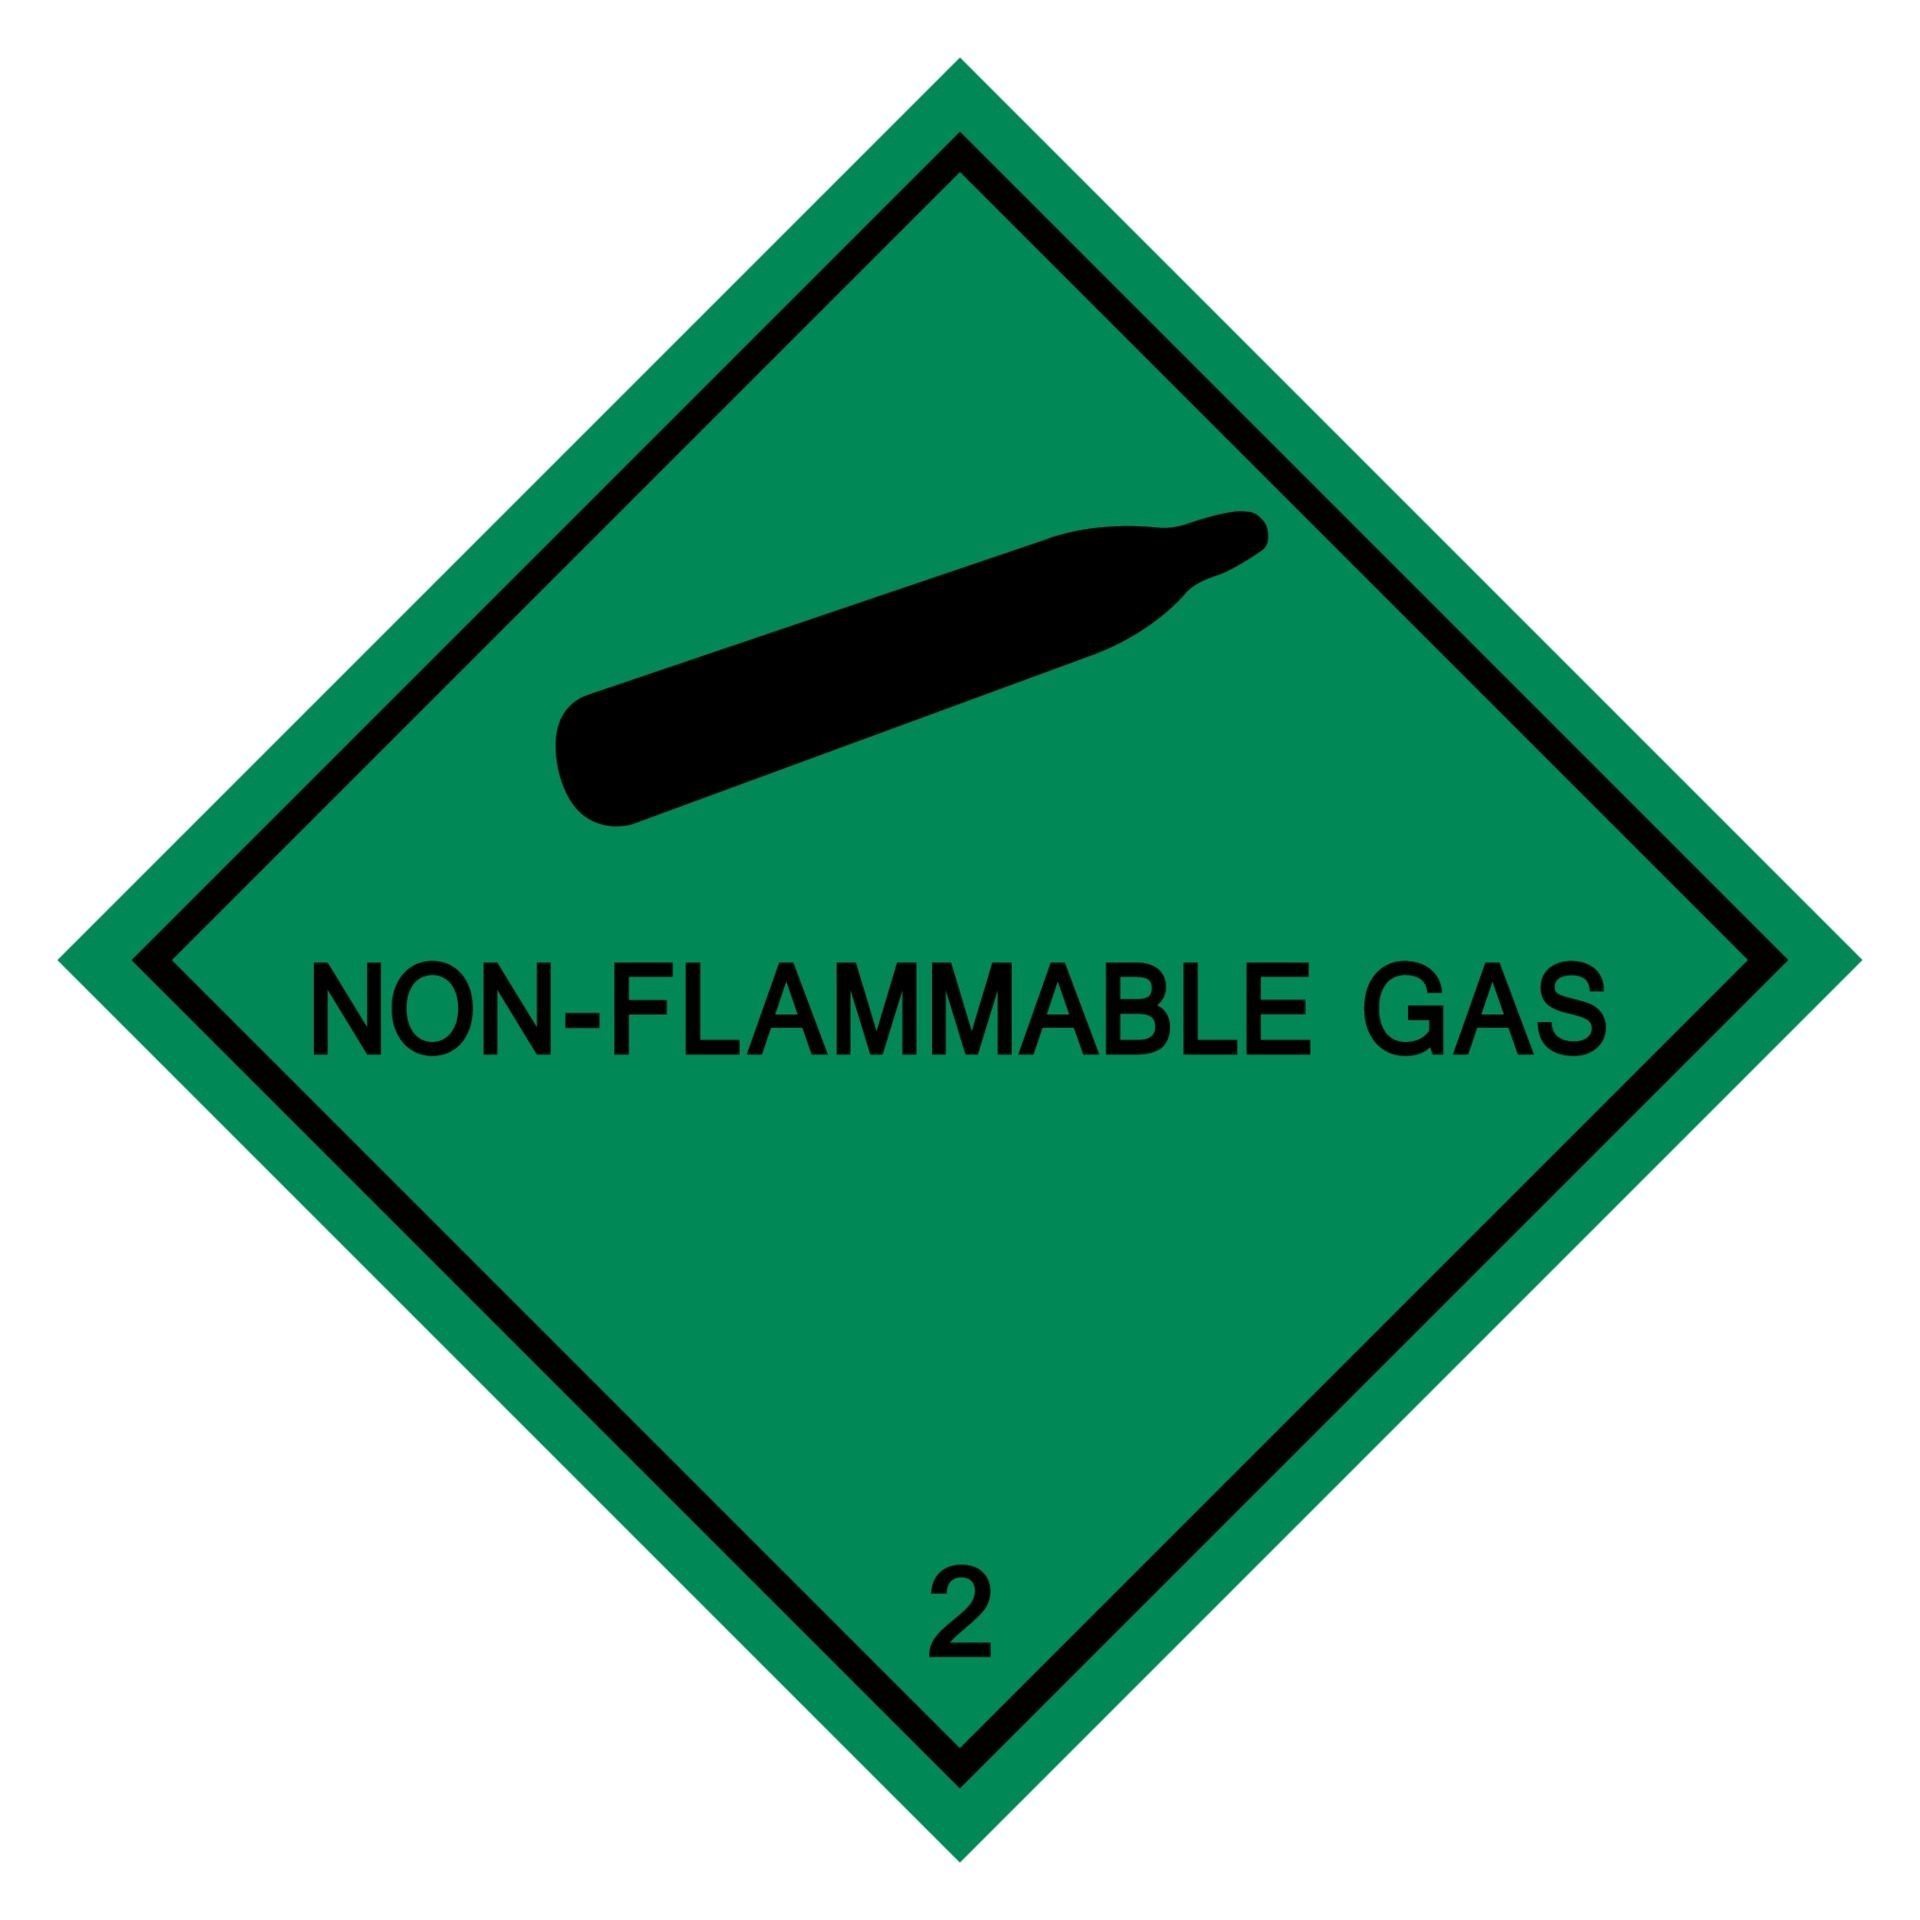 2261195-non-flammable-gas-symbol-sign-isolate-on-white-background-vector-illustration-eps-10-gratis-vetor.jpg